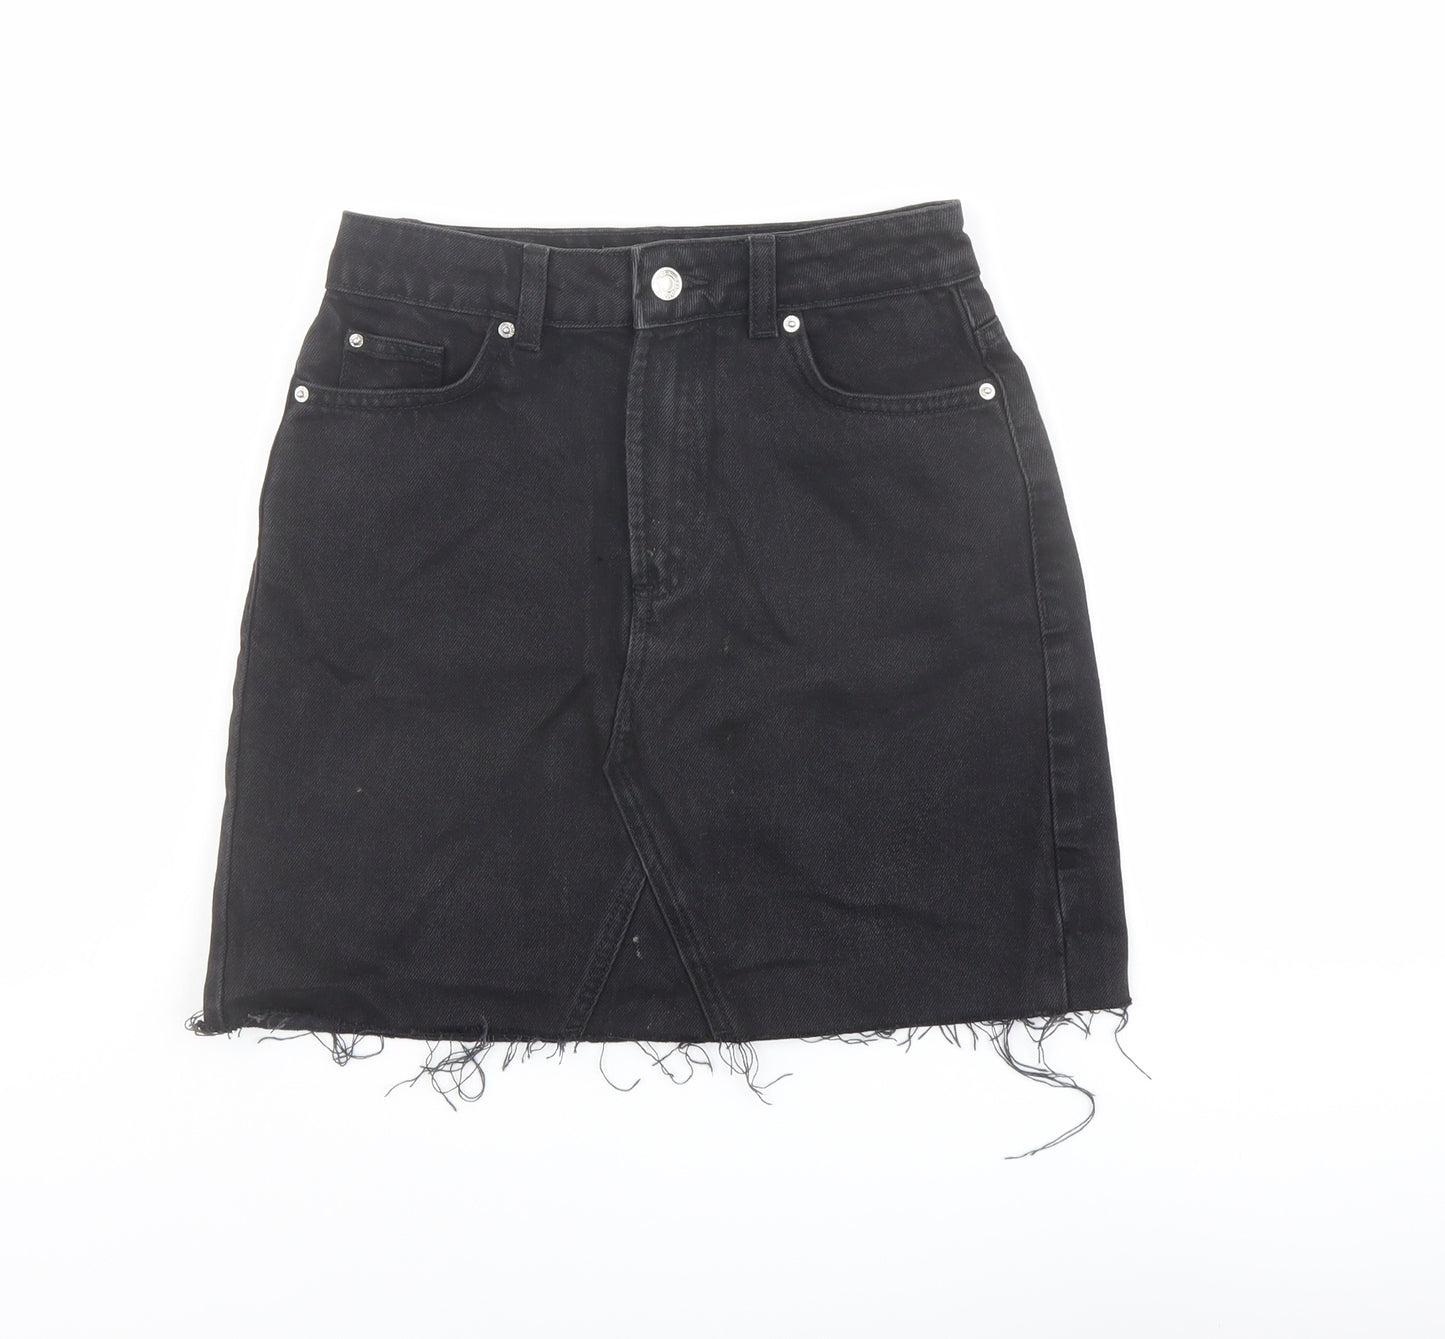 Denim & Co. Womens Black Cotton A-Line Skirt Size 4 Button